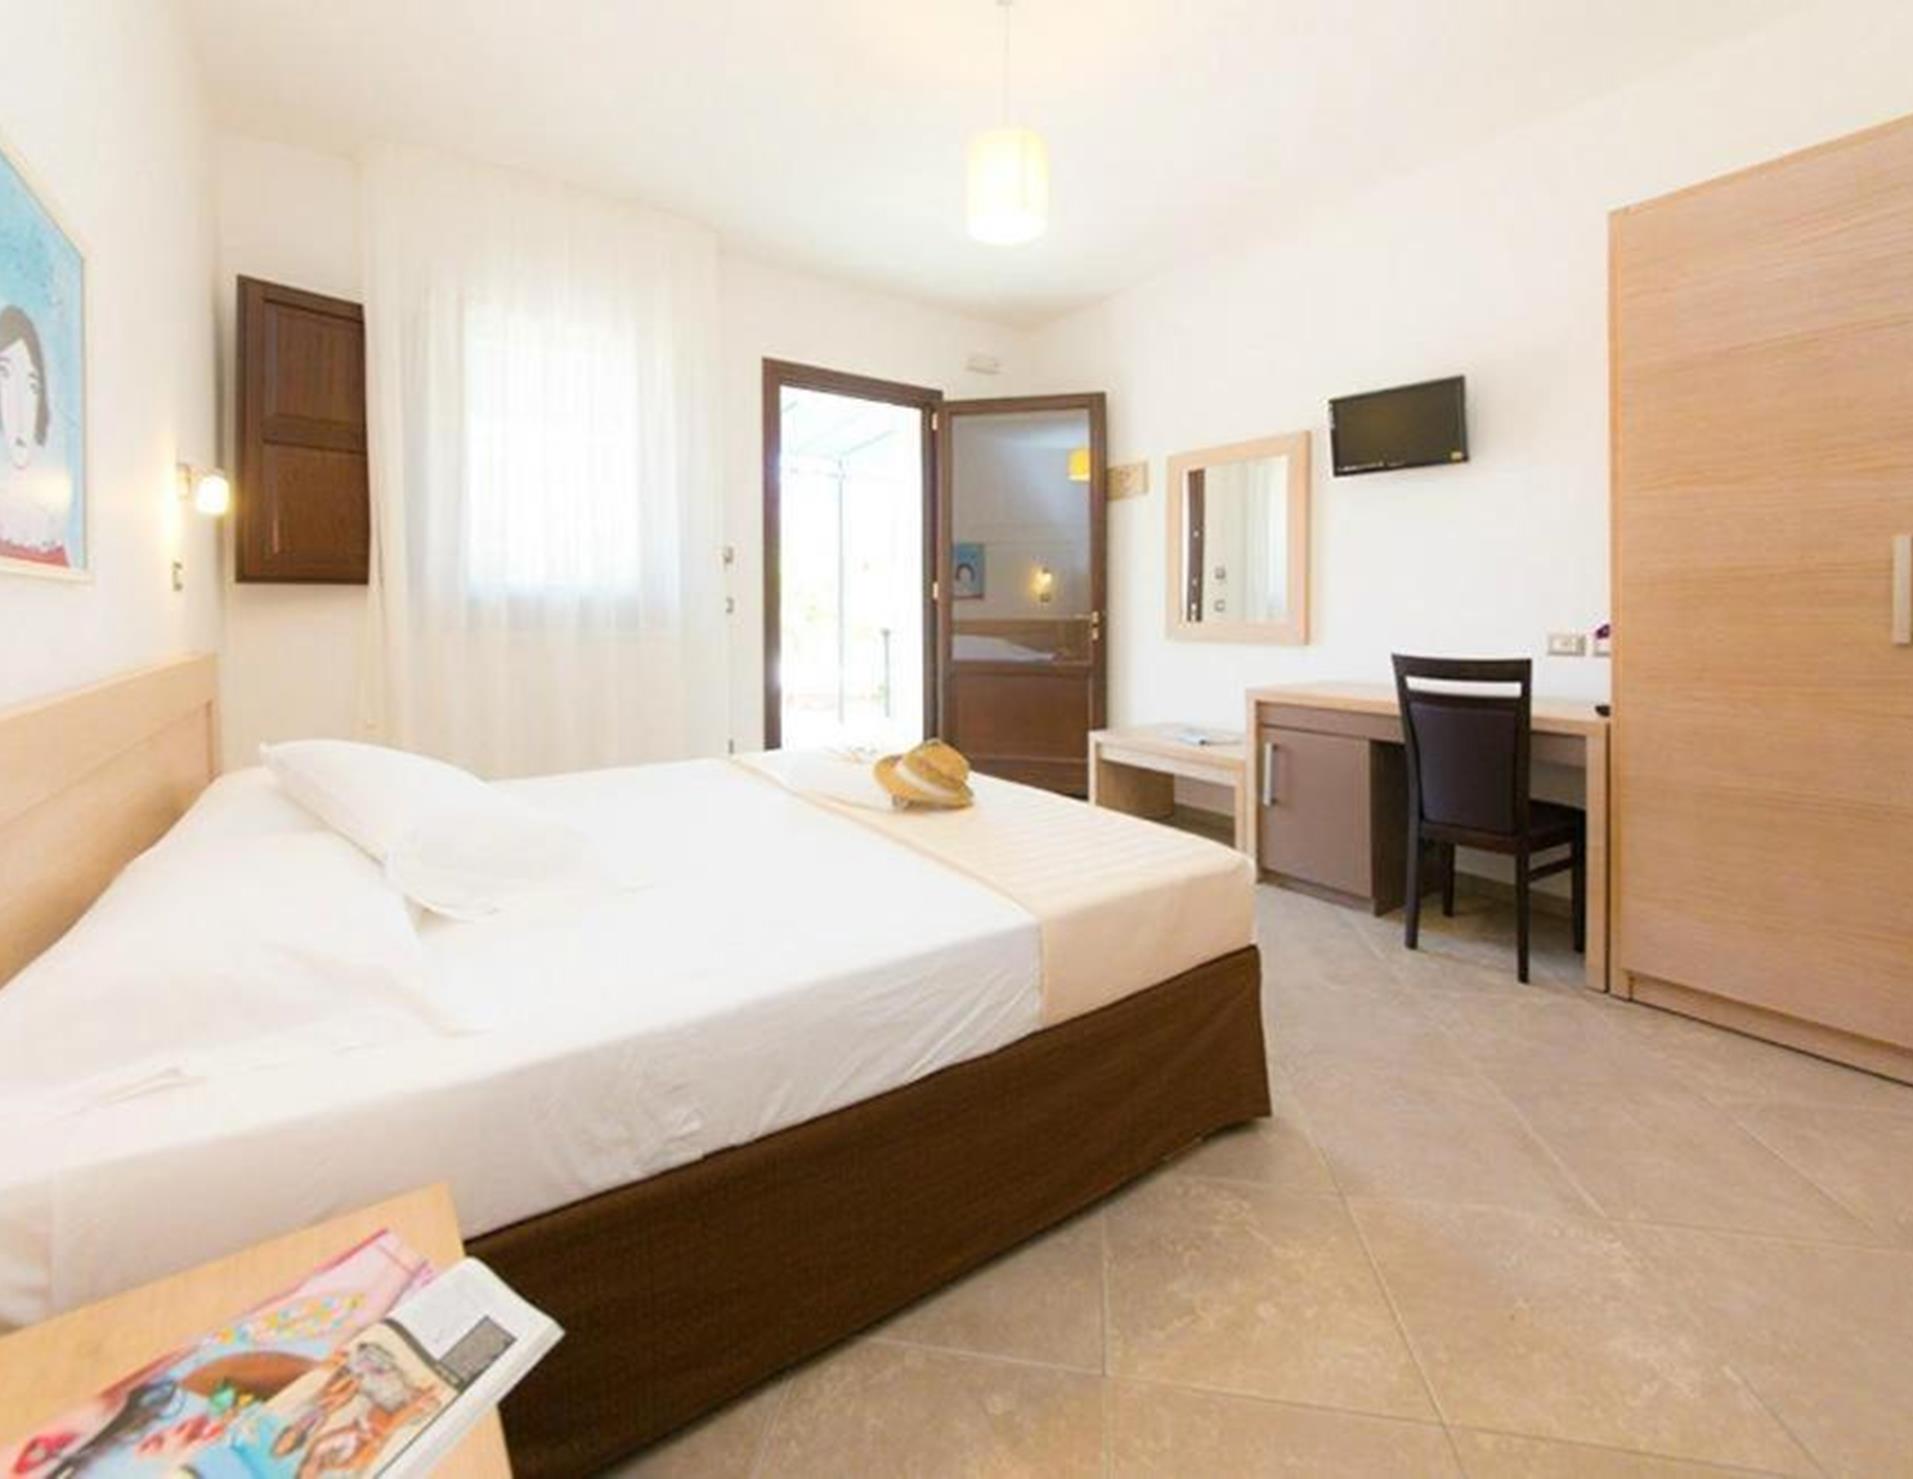 Volito Hotel - Room 2